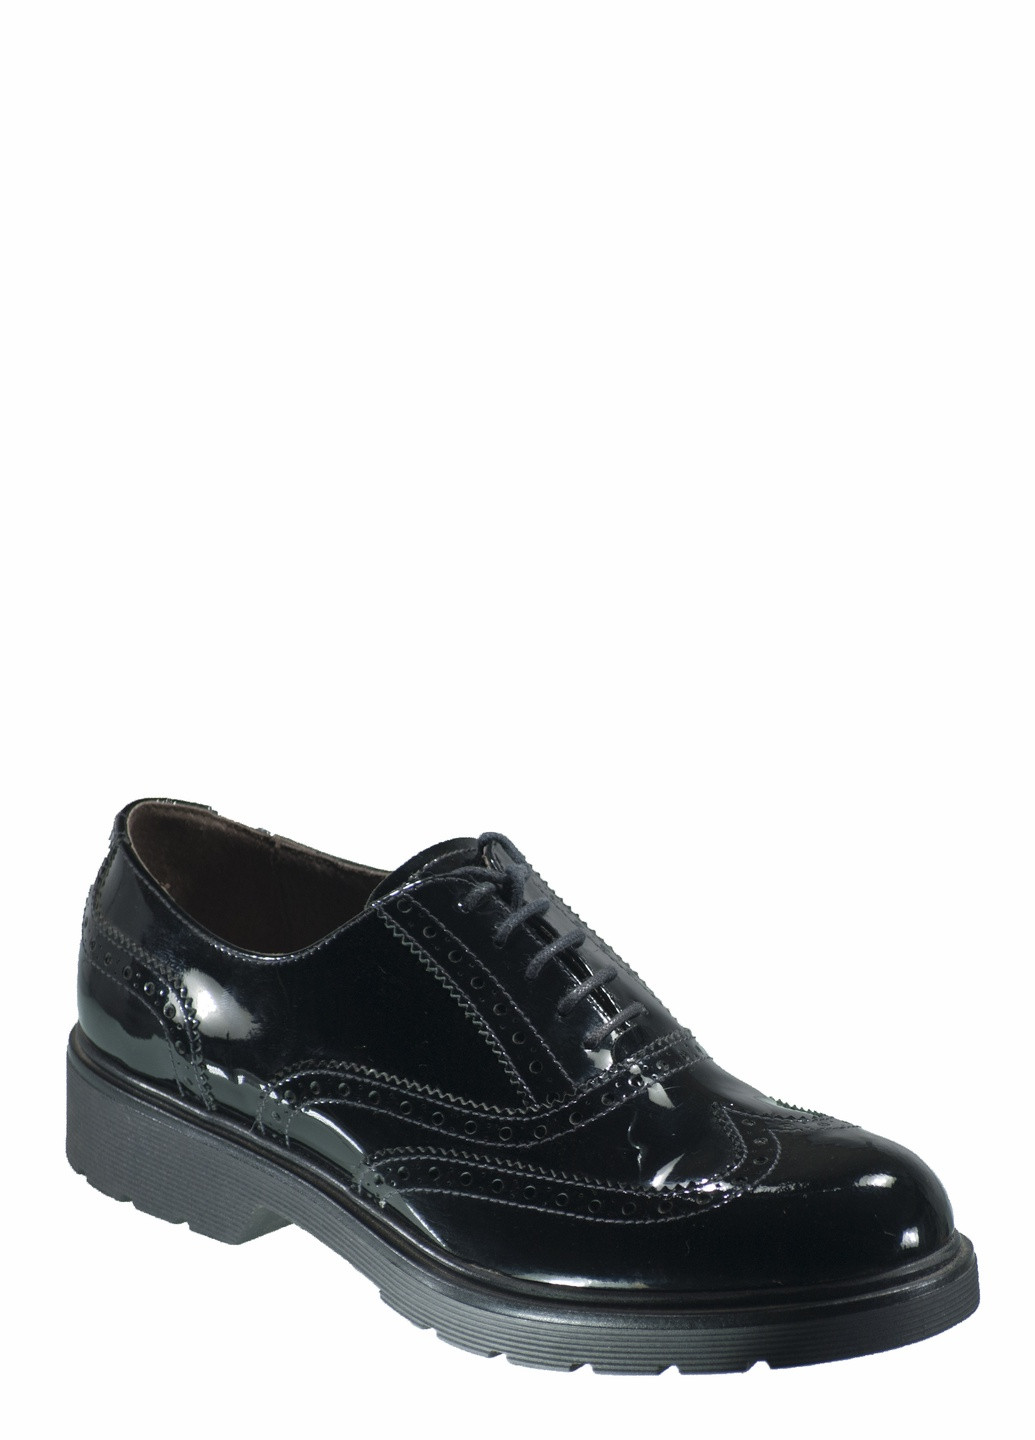 Туфли Nero Giardini на низком каблуке со шнуровкой, с перфорацией, с тиснением, с логотипом, лаковые